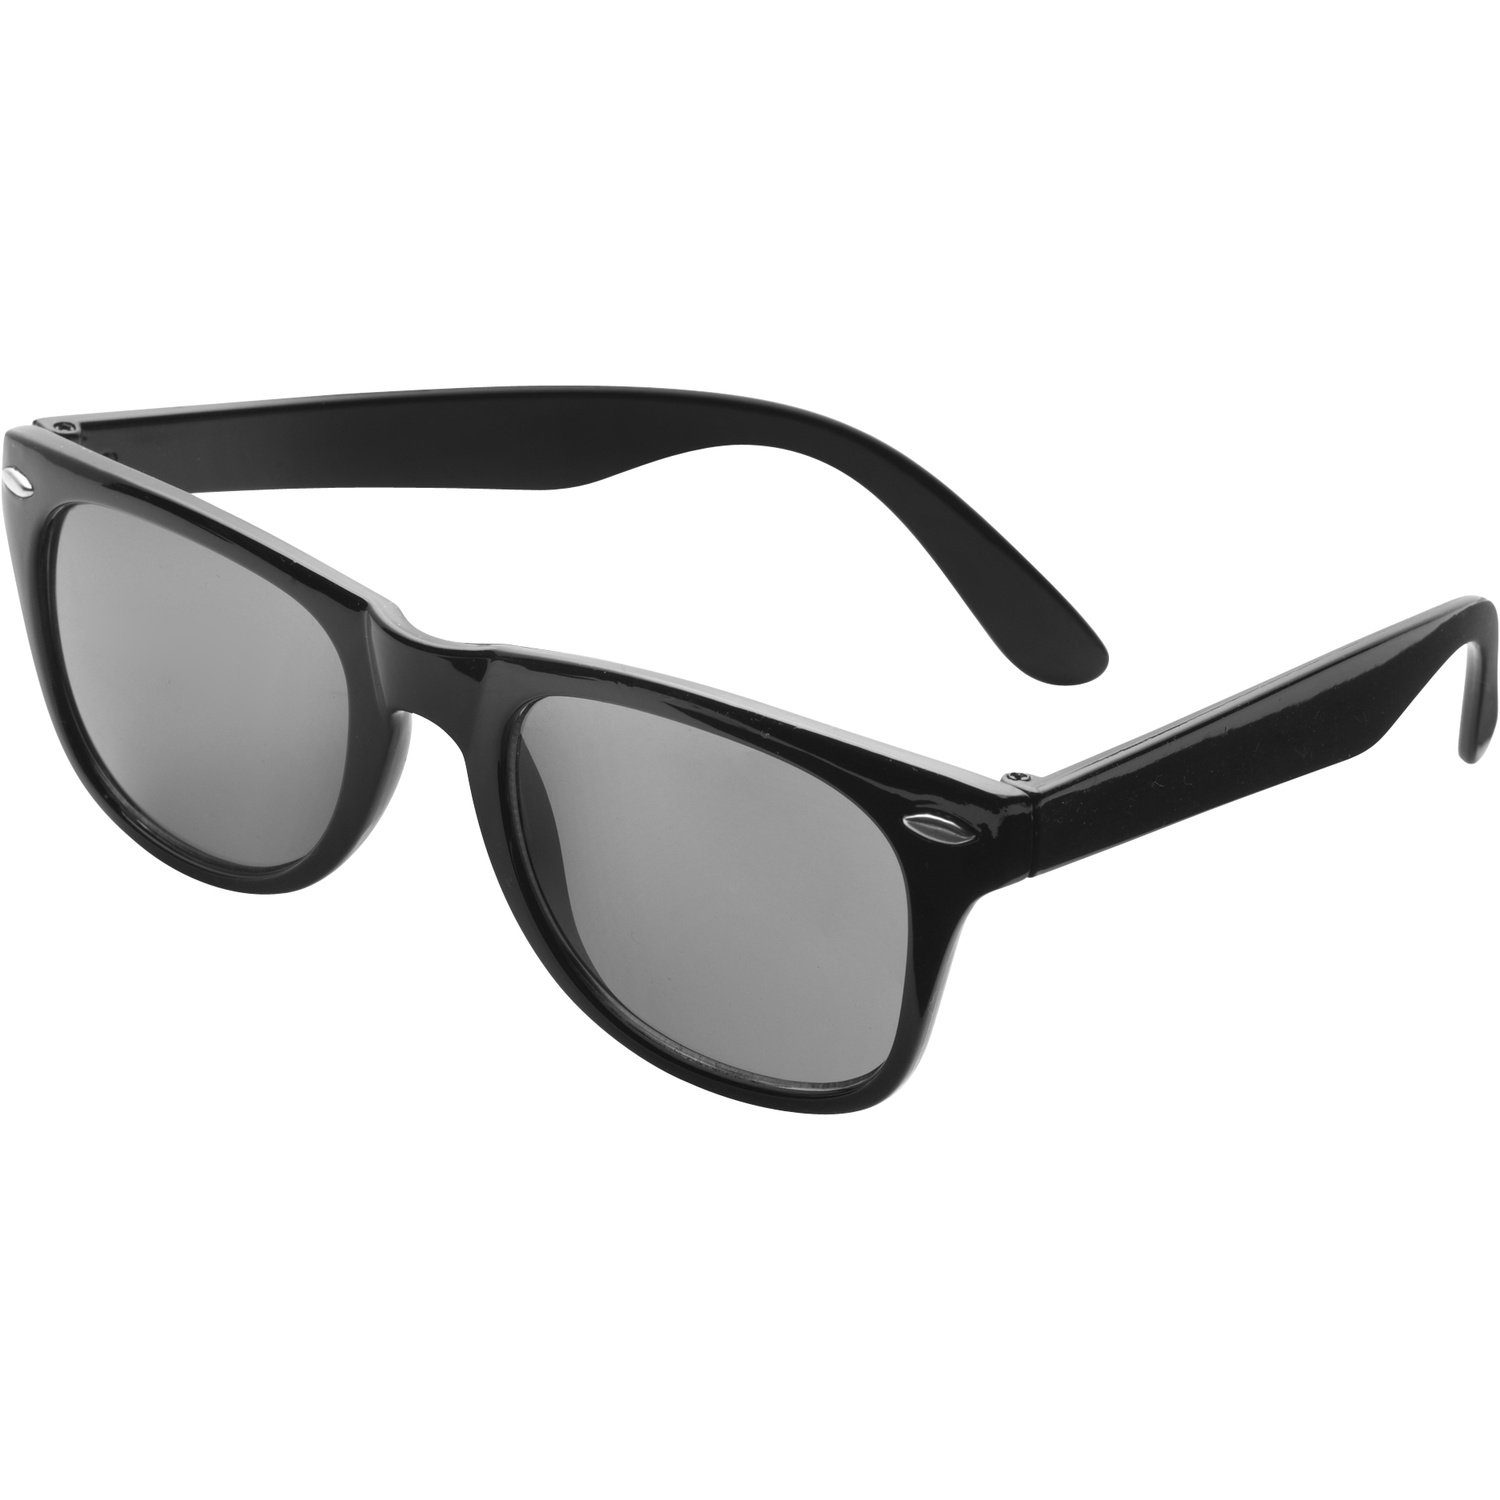 009672 001999999 3d045 rgt pro01 fal - Classic sunglasses